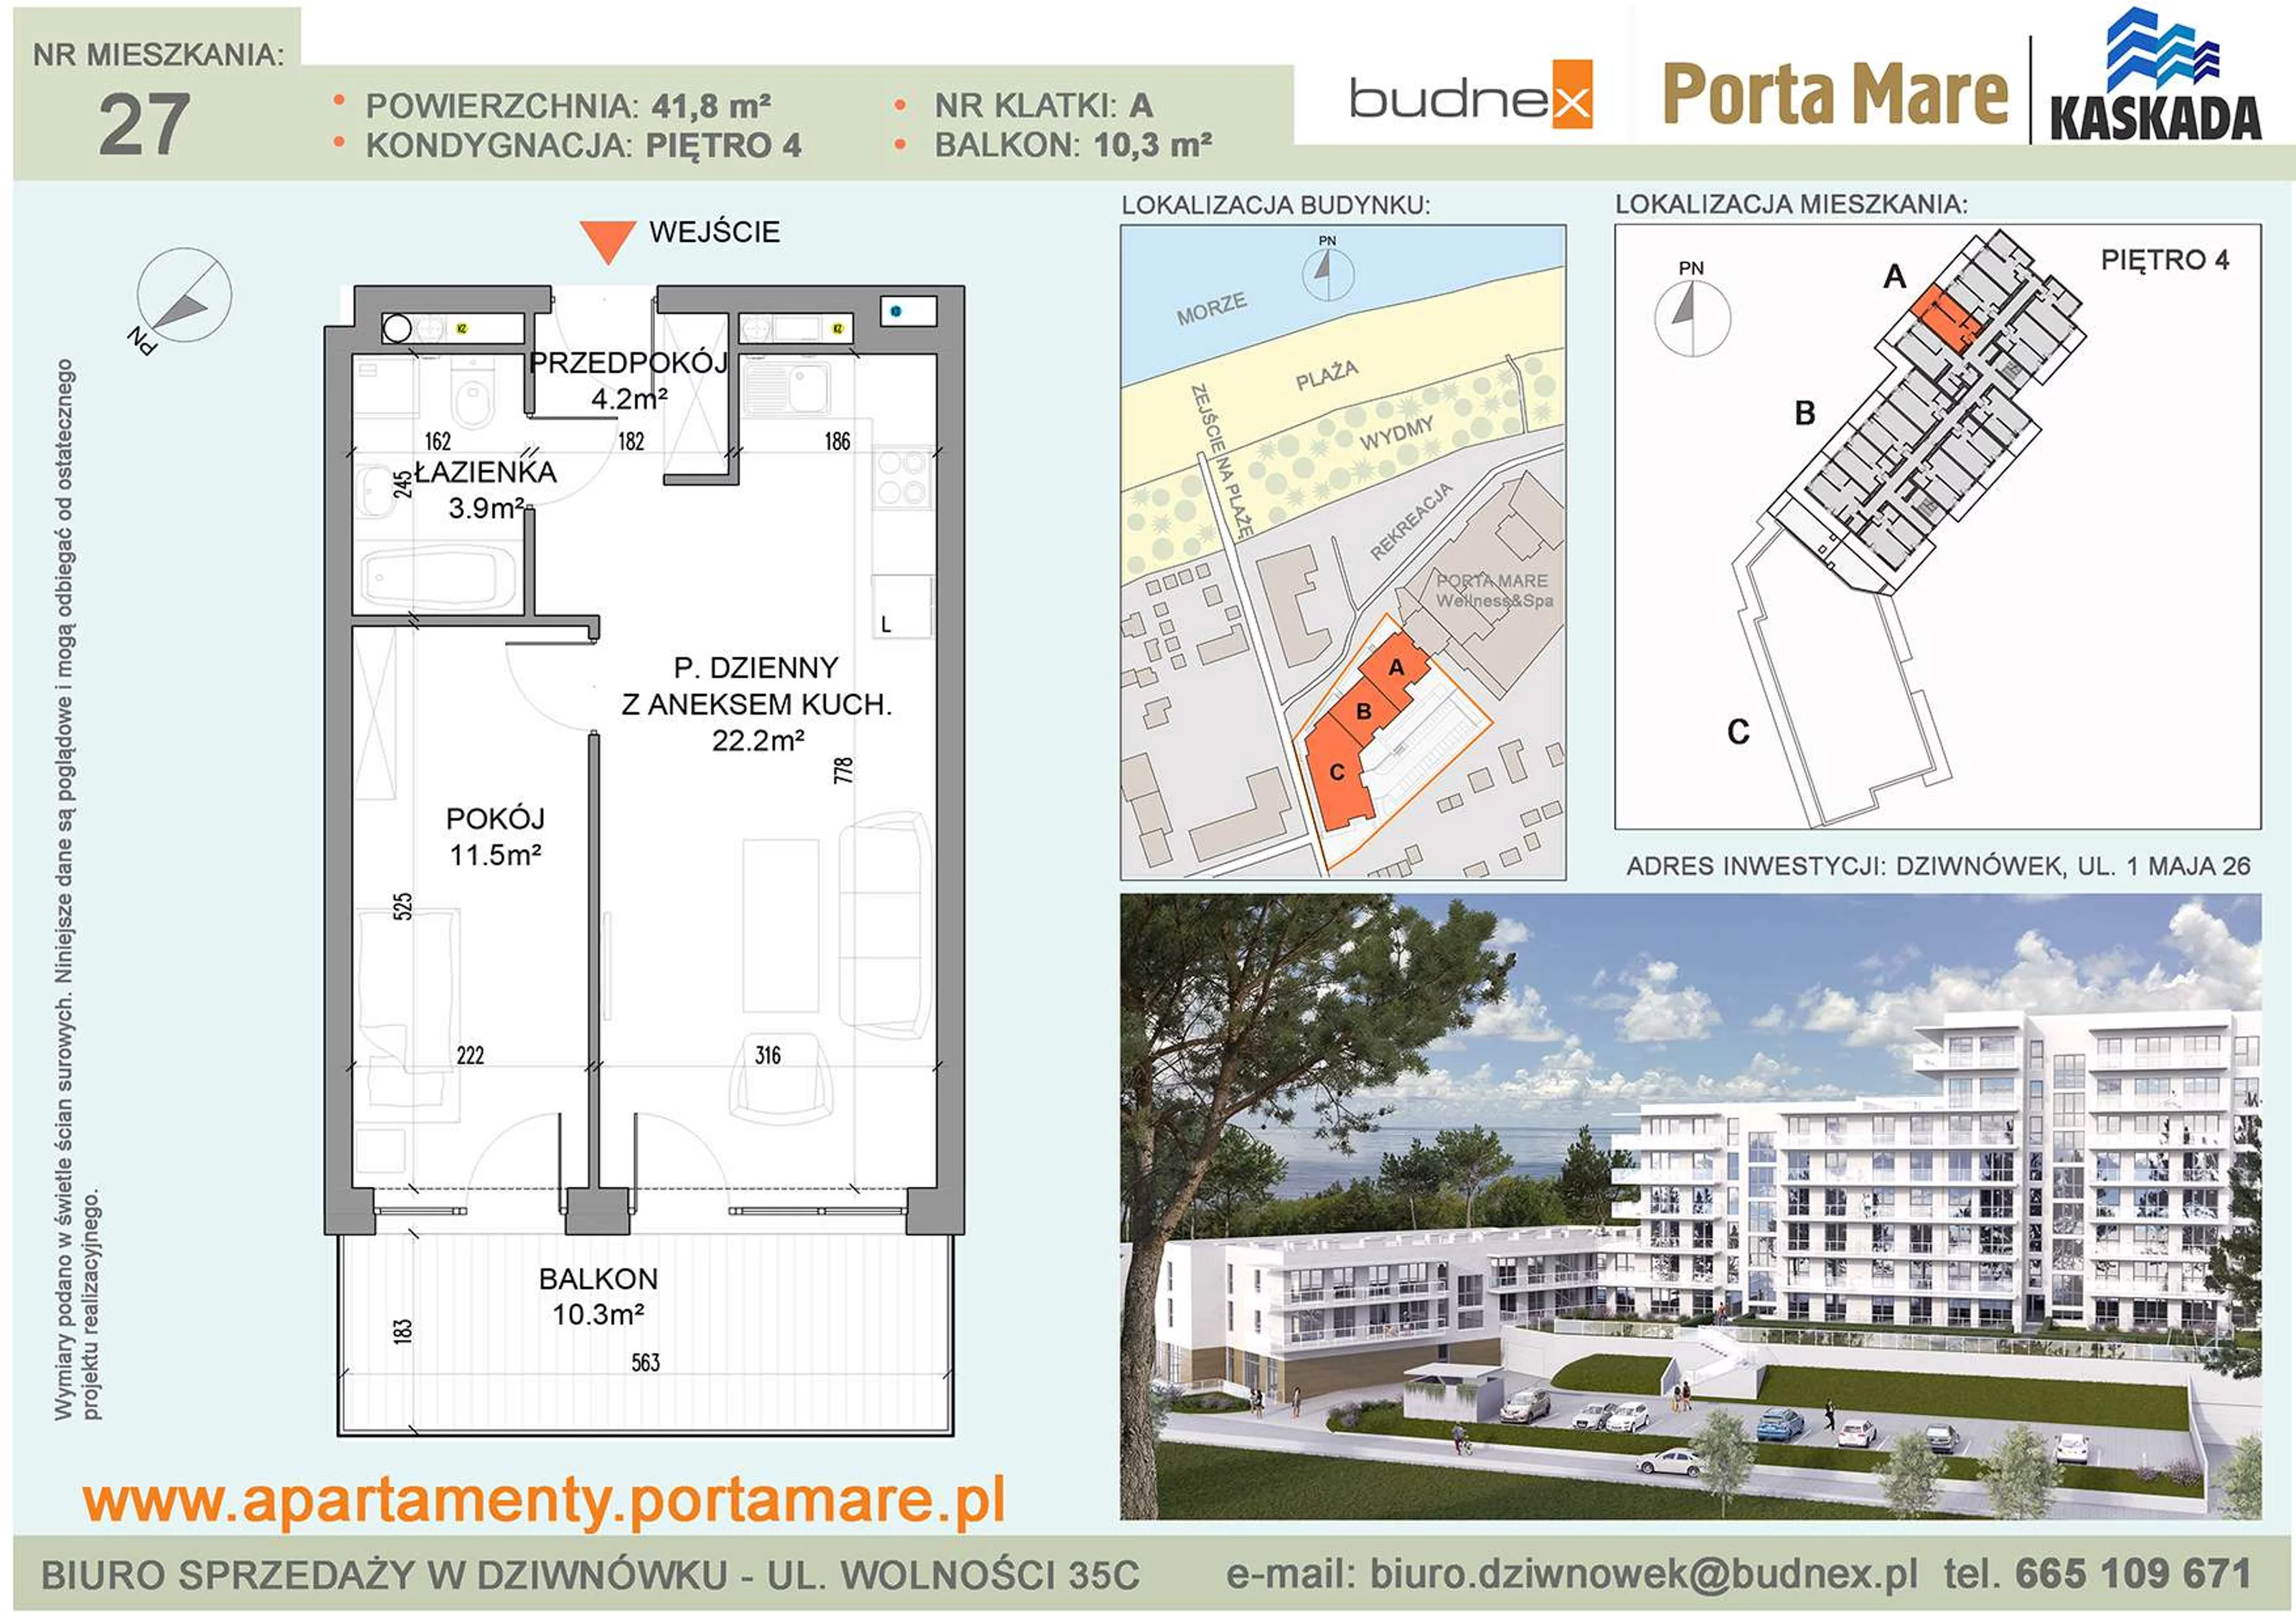 Apartament 41,80 m², piętro 4, oferta nr A/M27, Porta Mare Kaskada, Dziwnówek, ul. 1 Maja 26